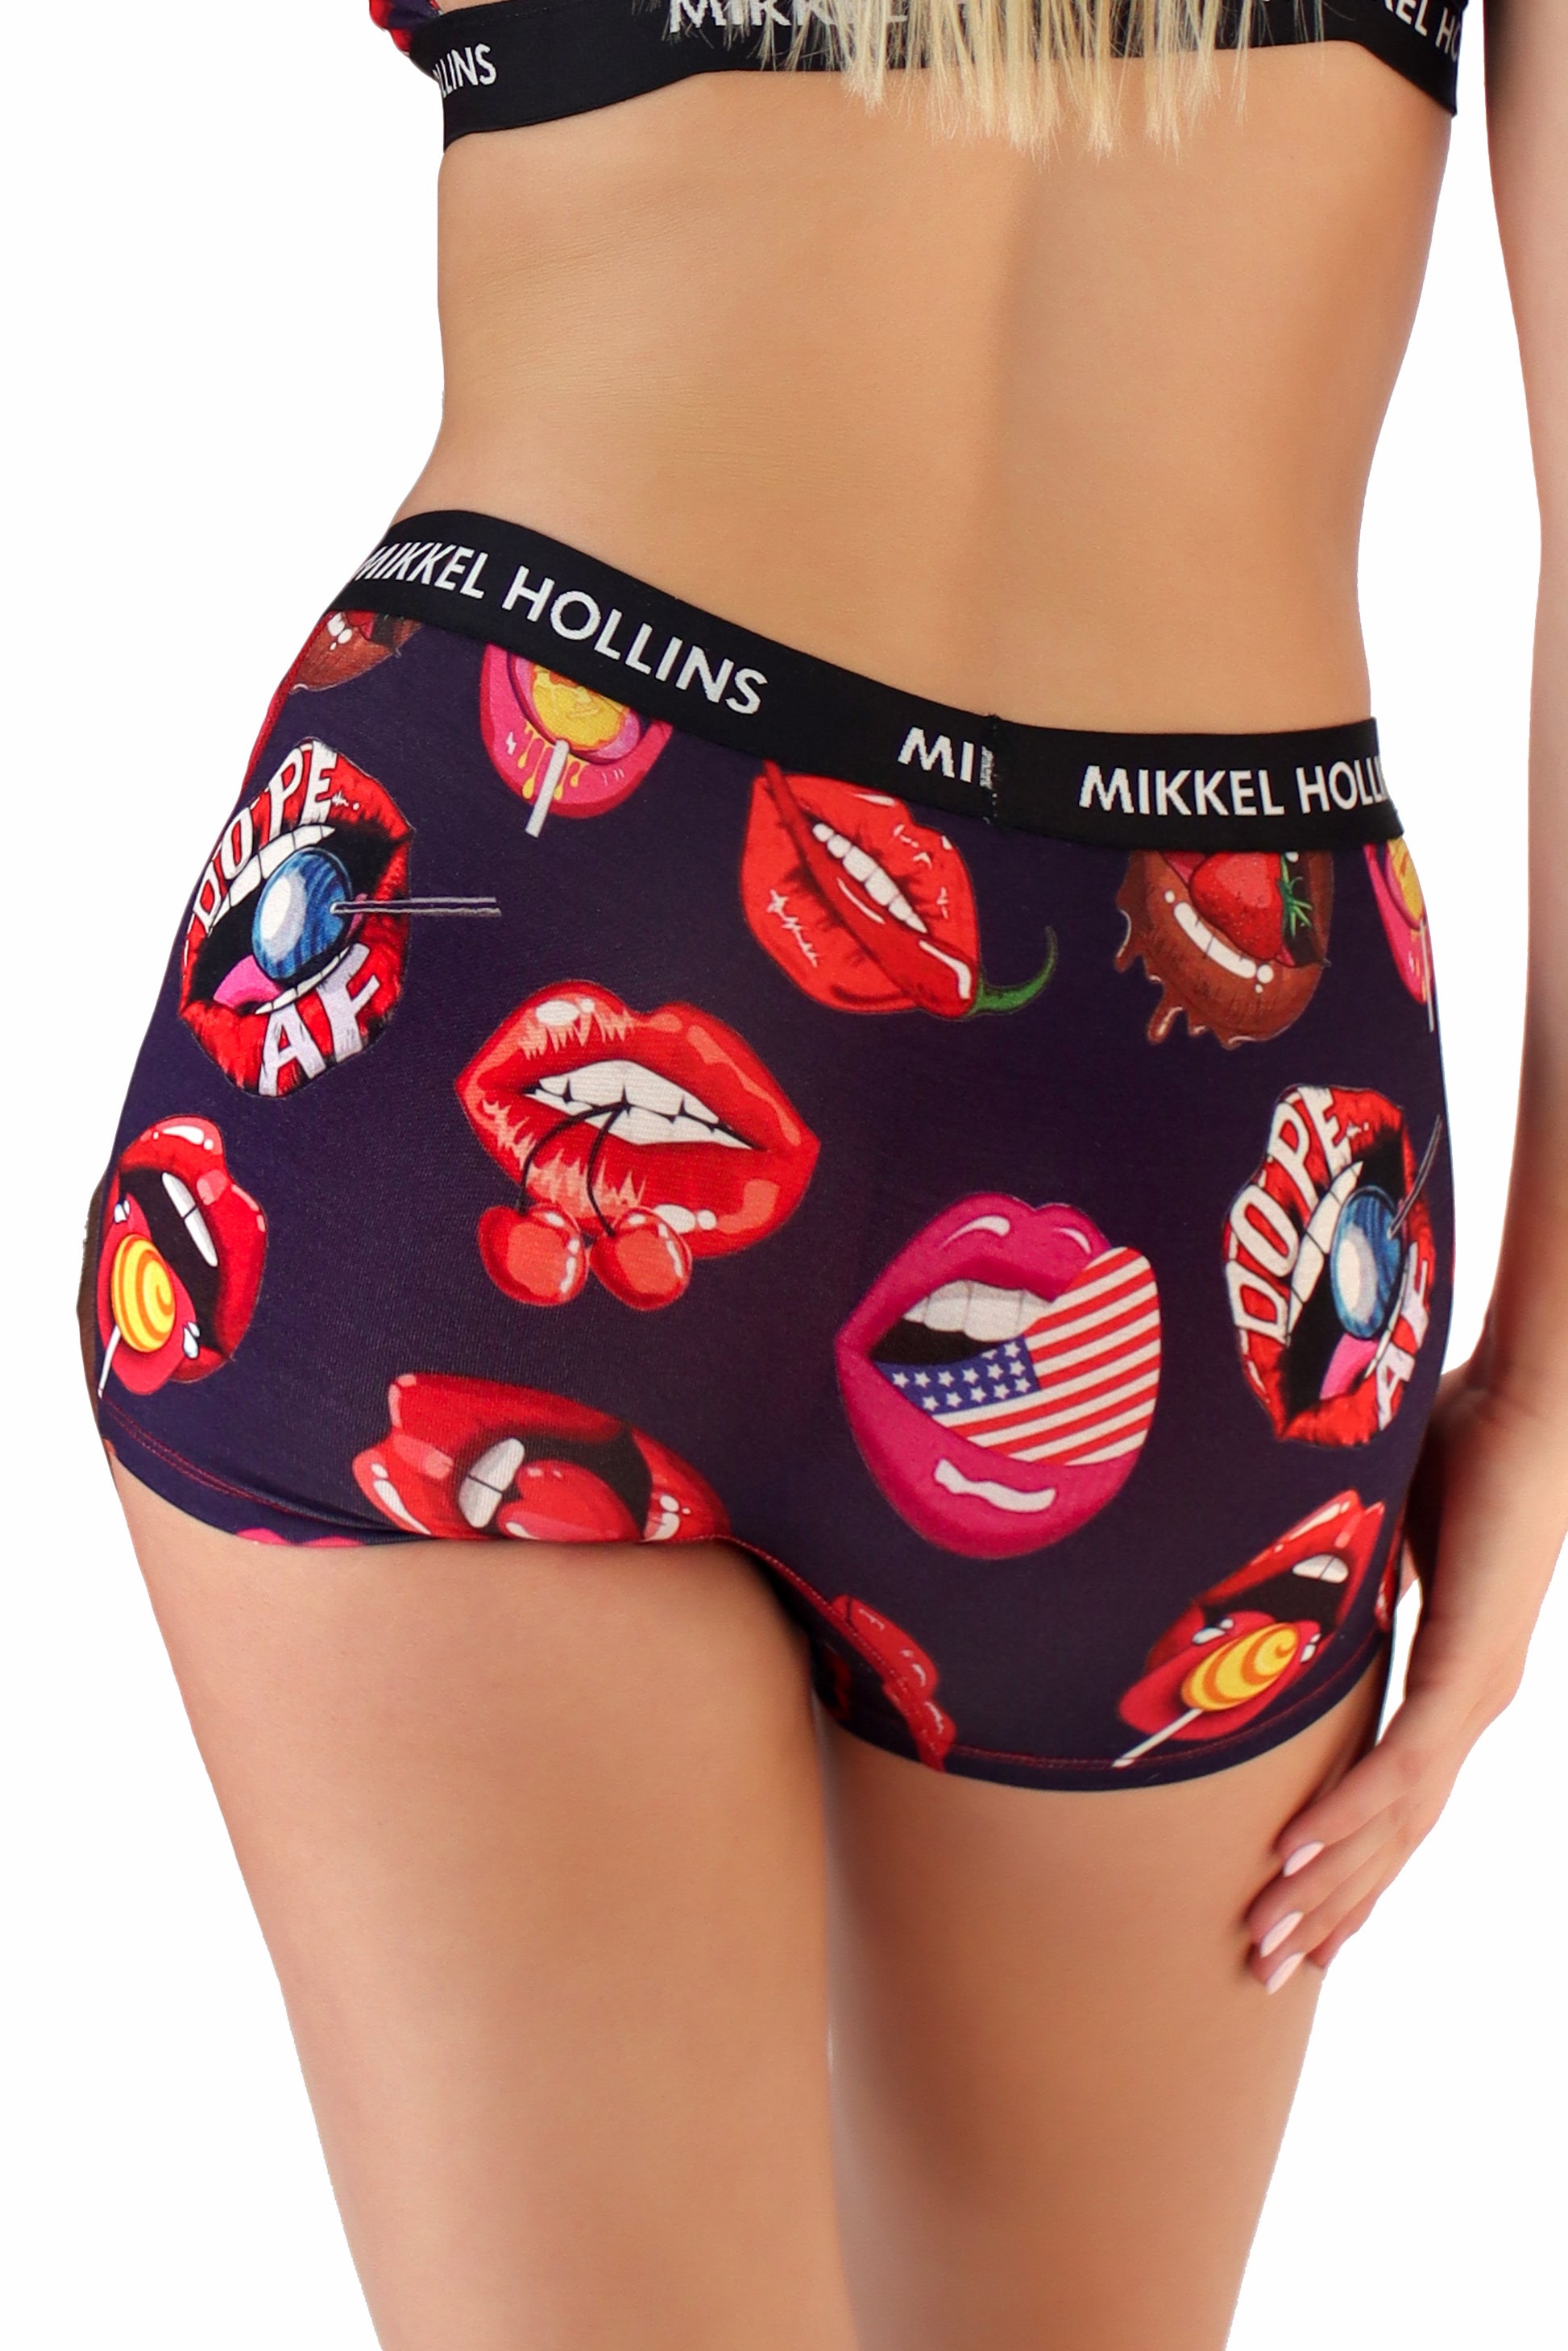 Sexy Lips Design - Boy Shorts Underwear For Women